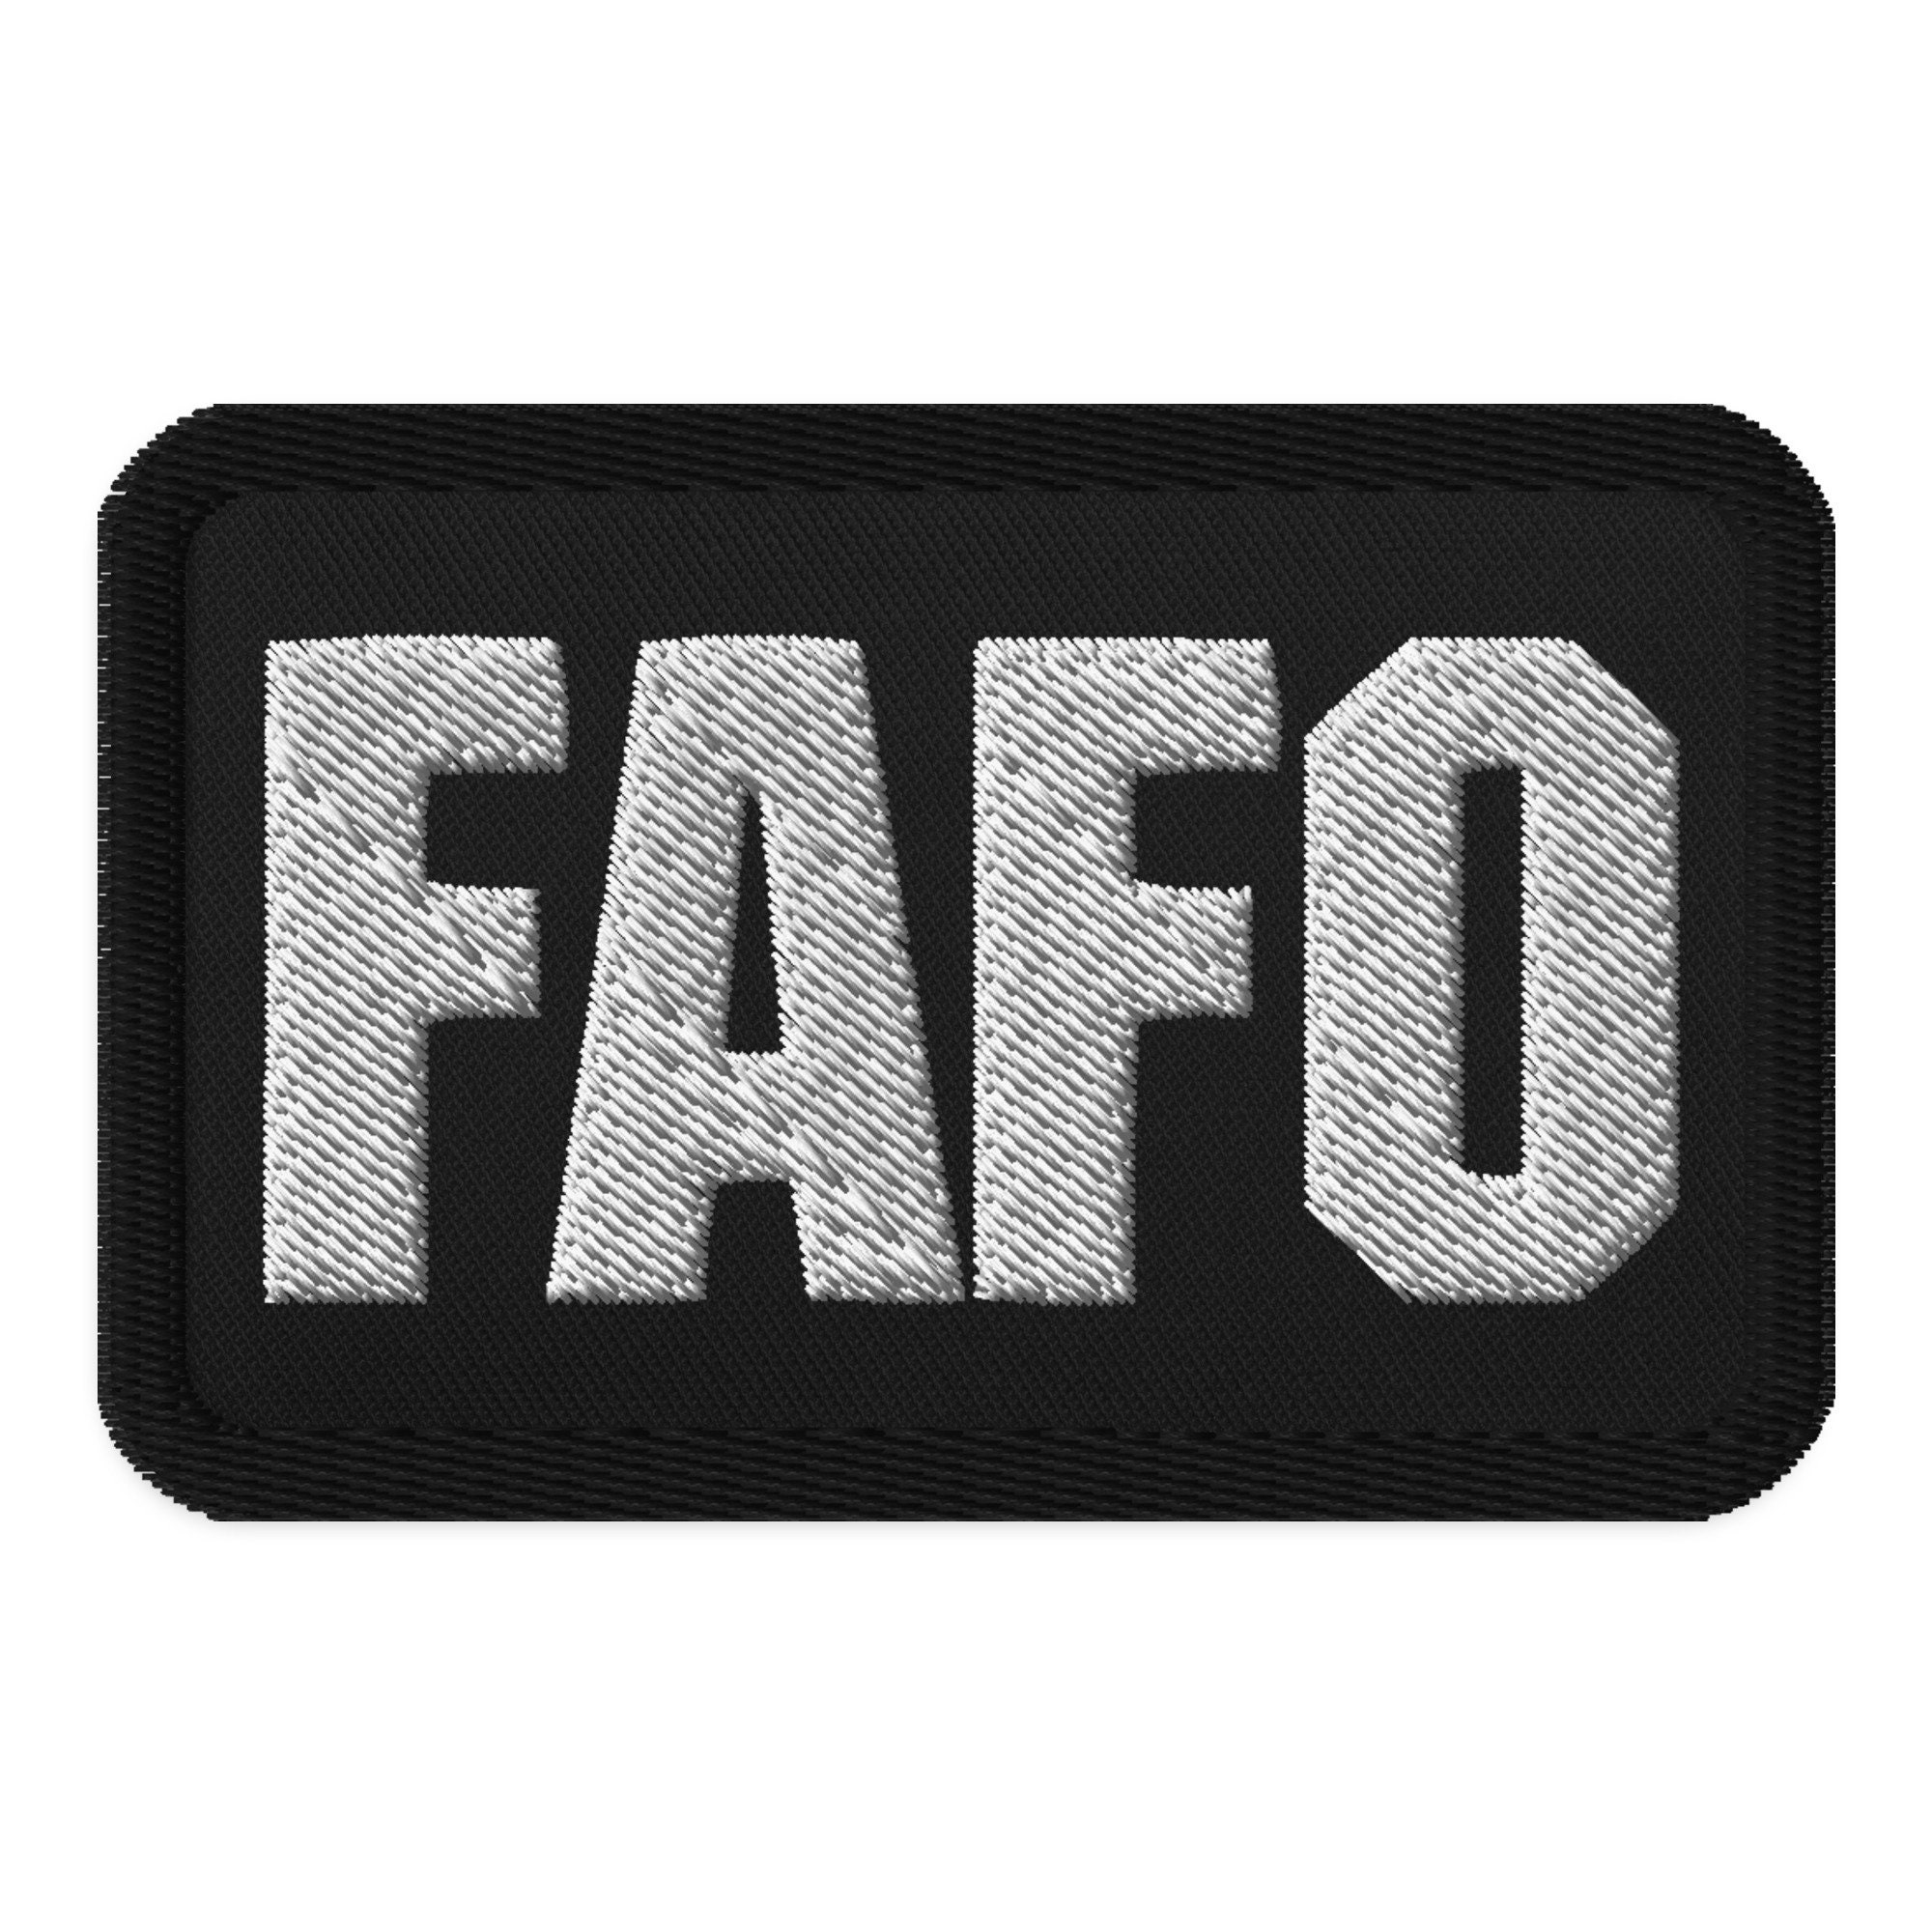 FAFO- Duty Identifier Patch